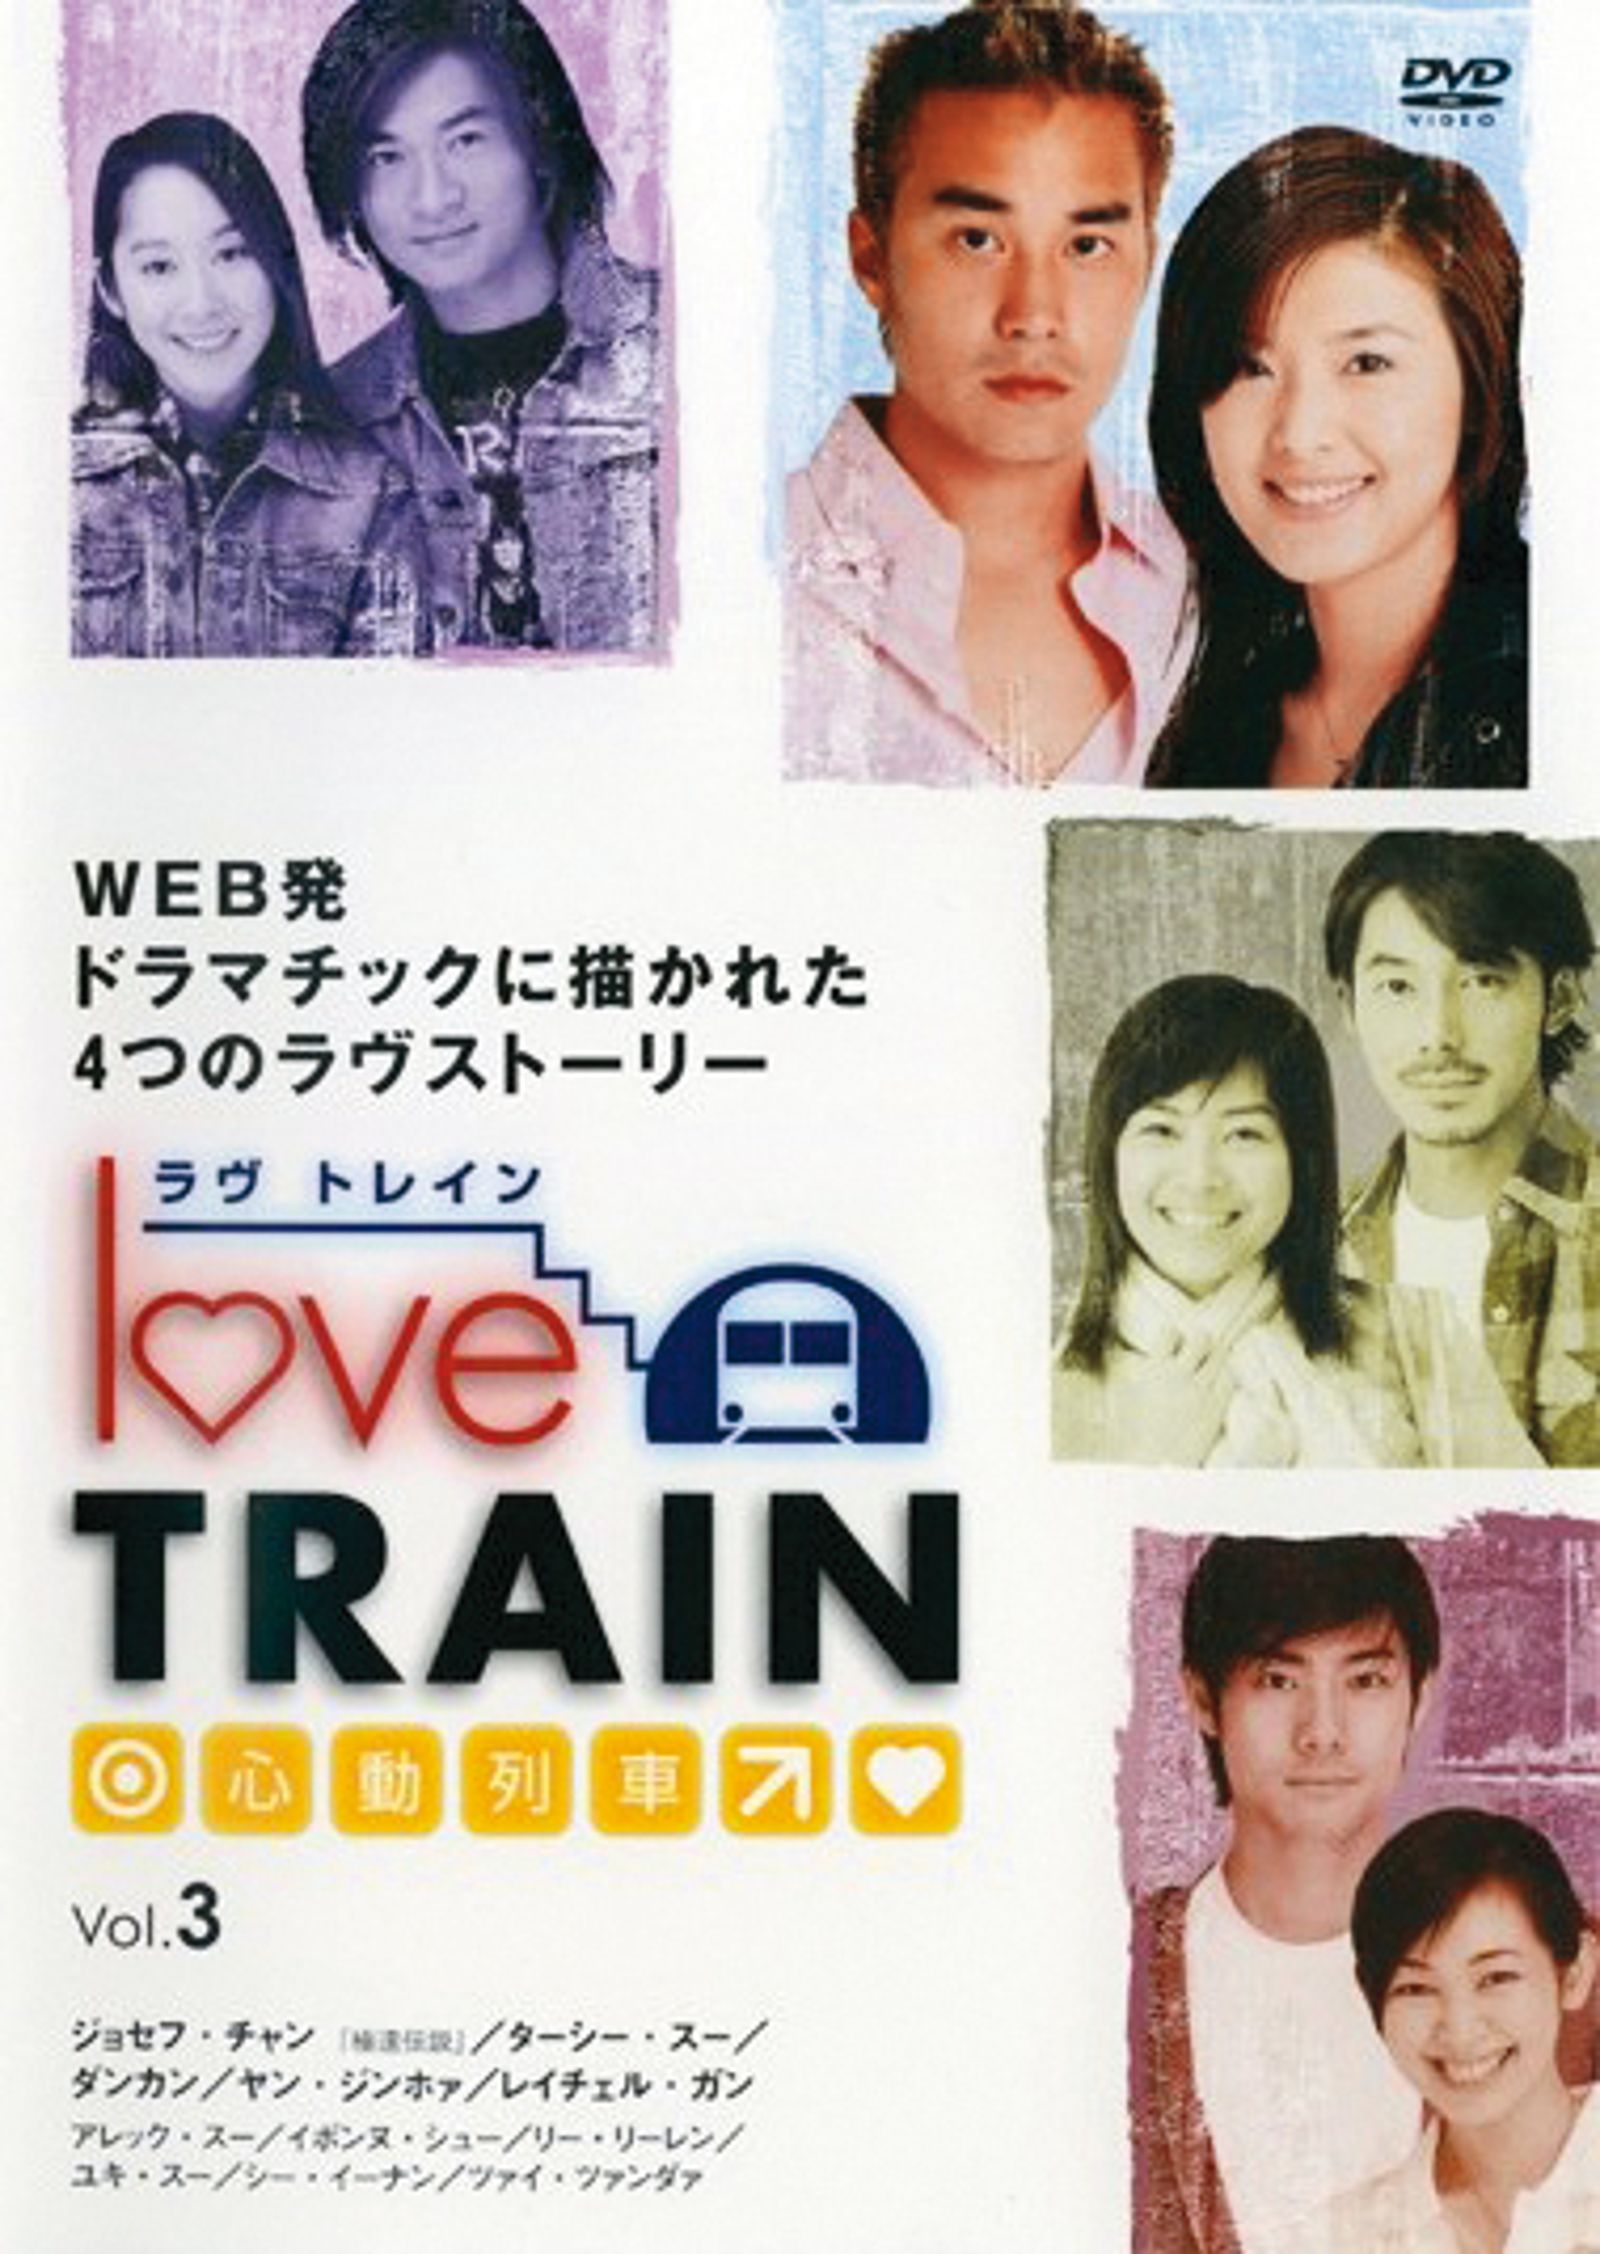 張孝全和蘇慧倫20年前曾合作電視劇《心動列車》